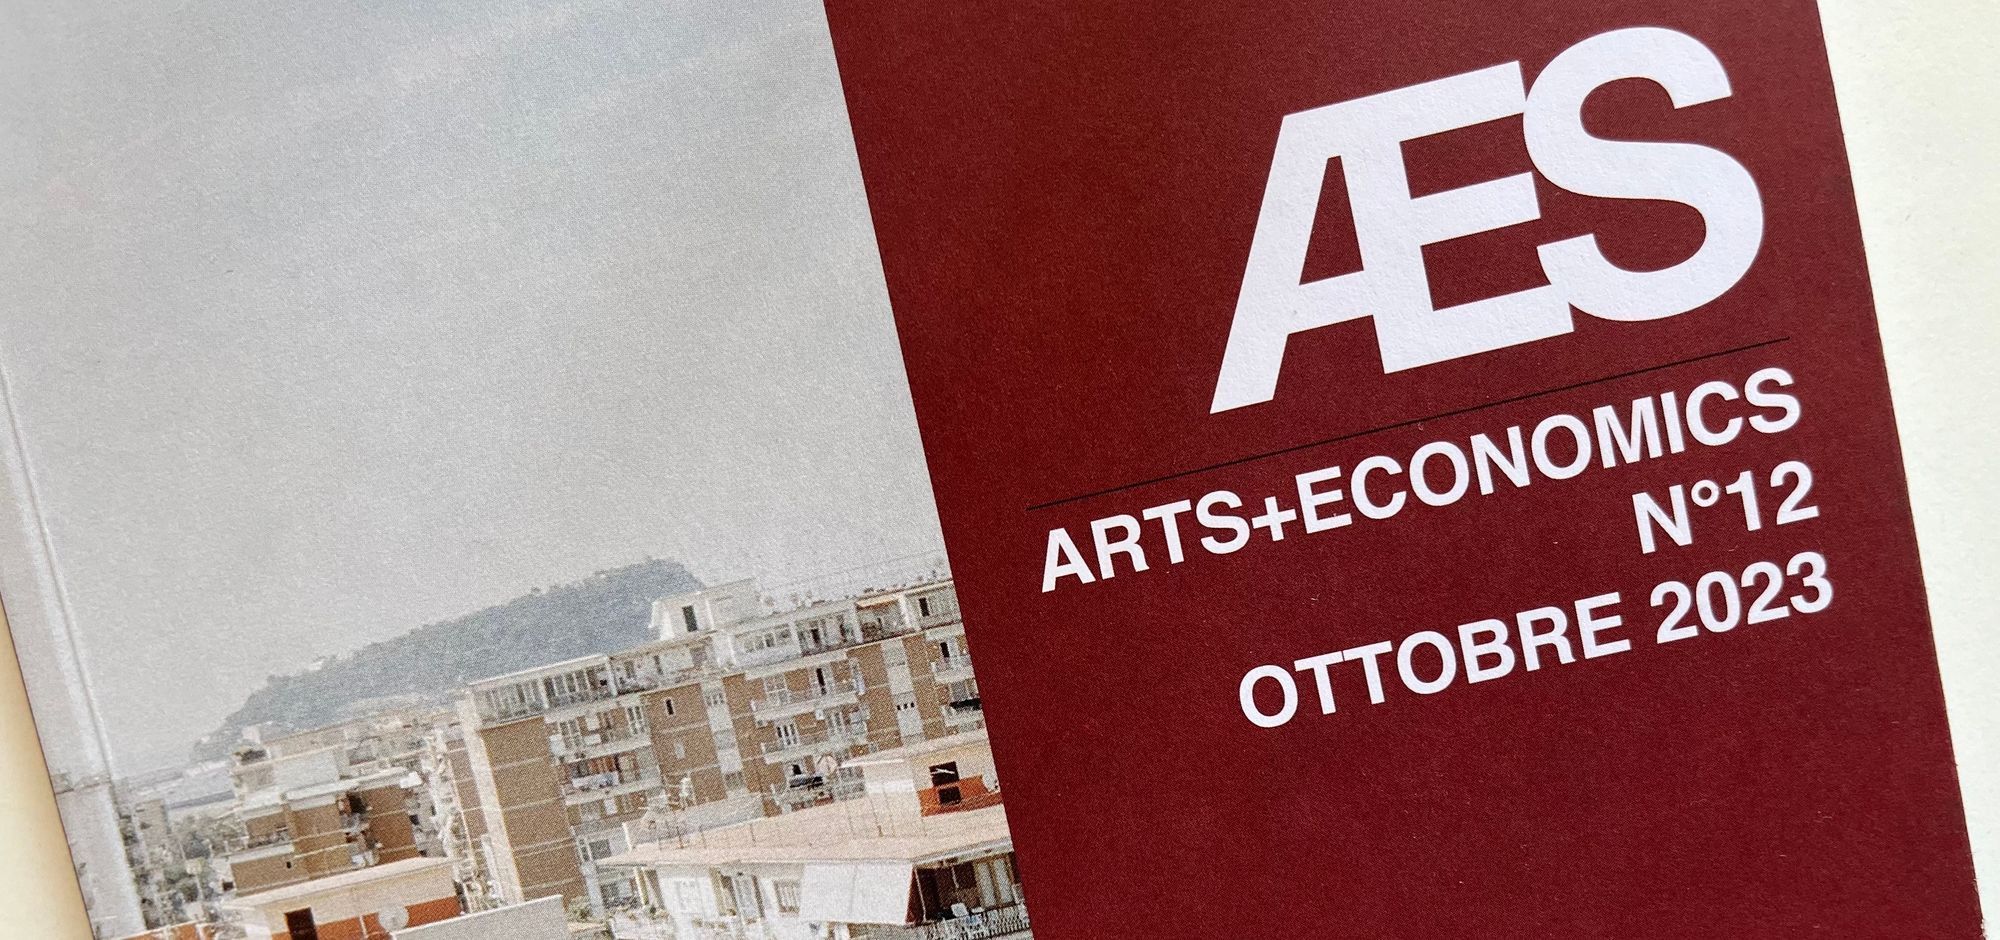 ARTS+ECONOMICS N°12 OCTOBER 2023